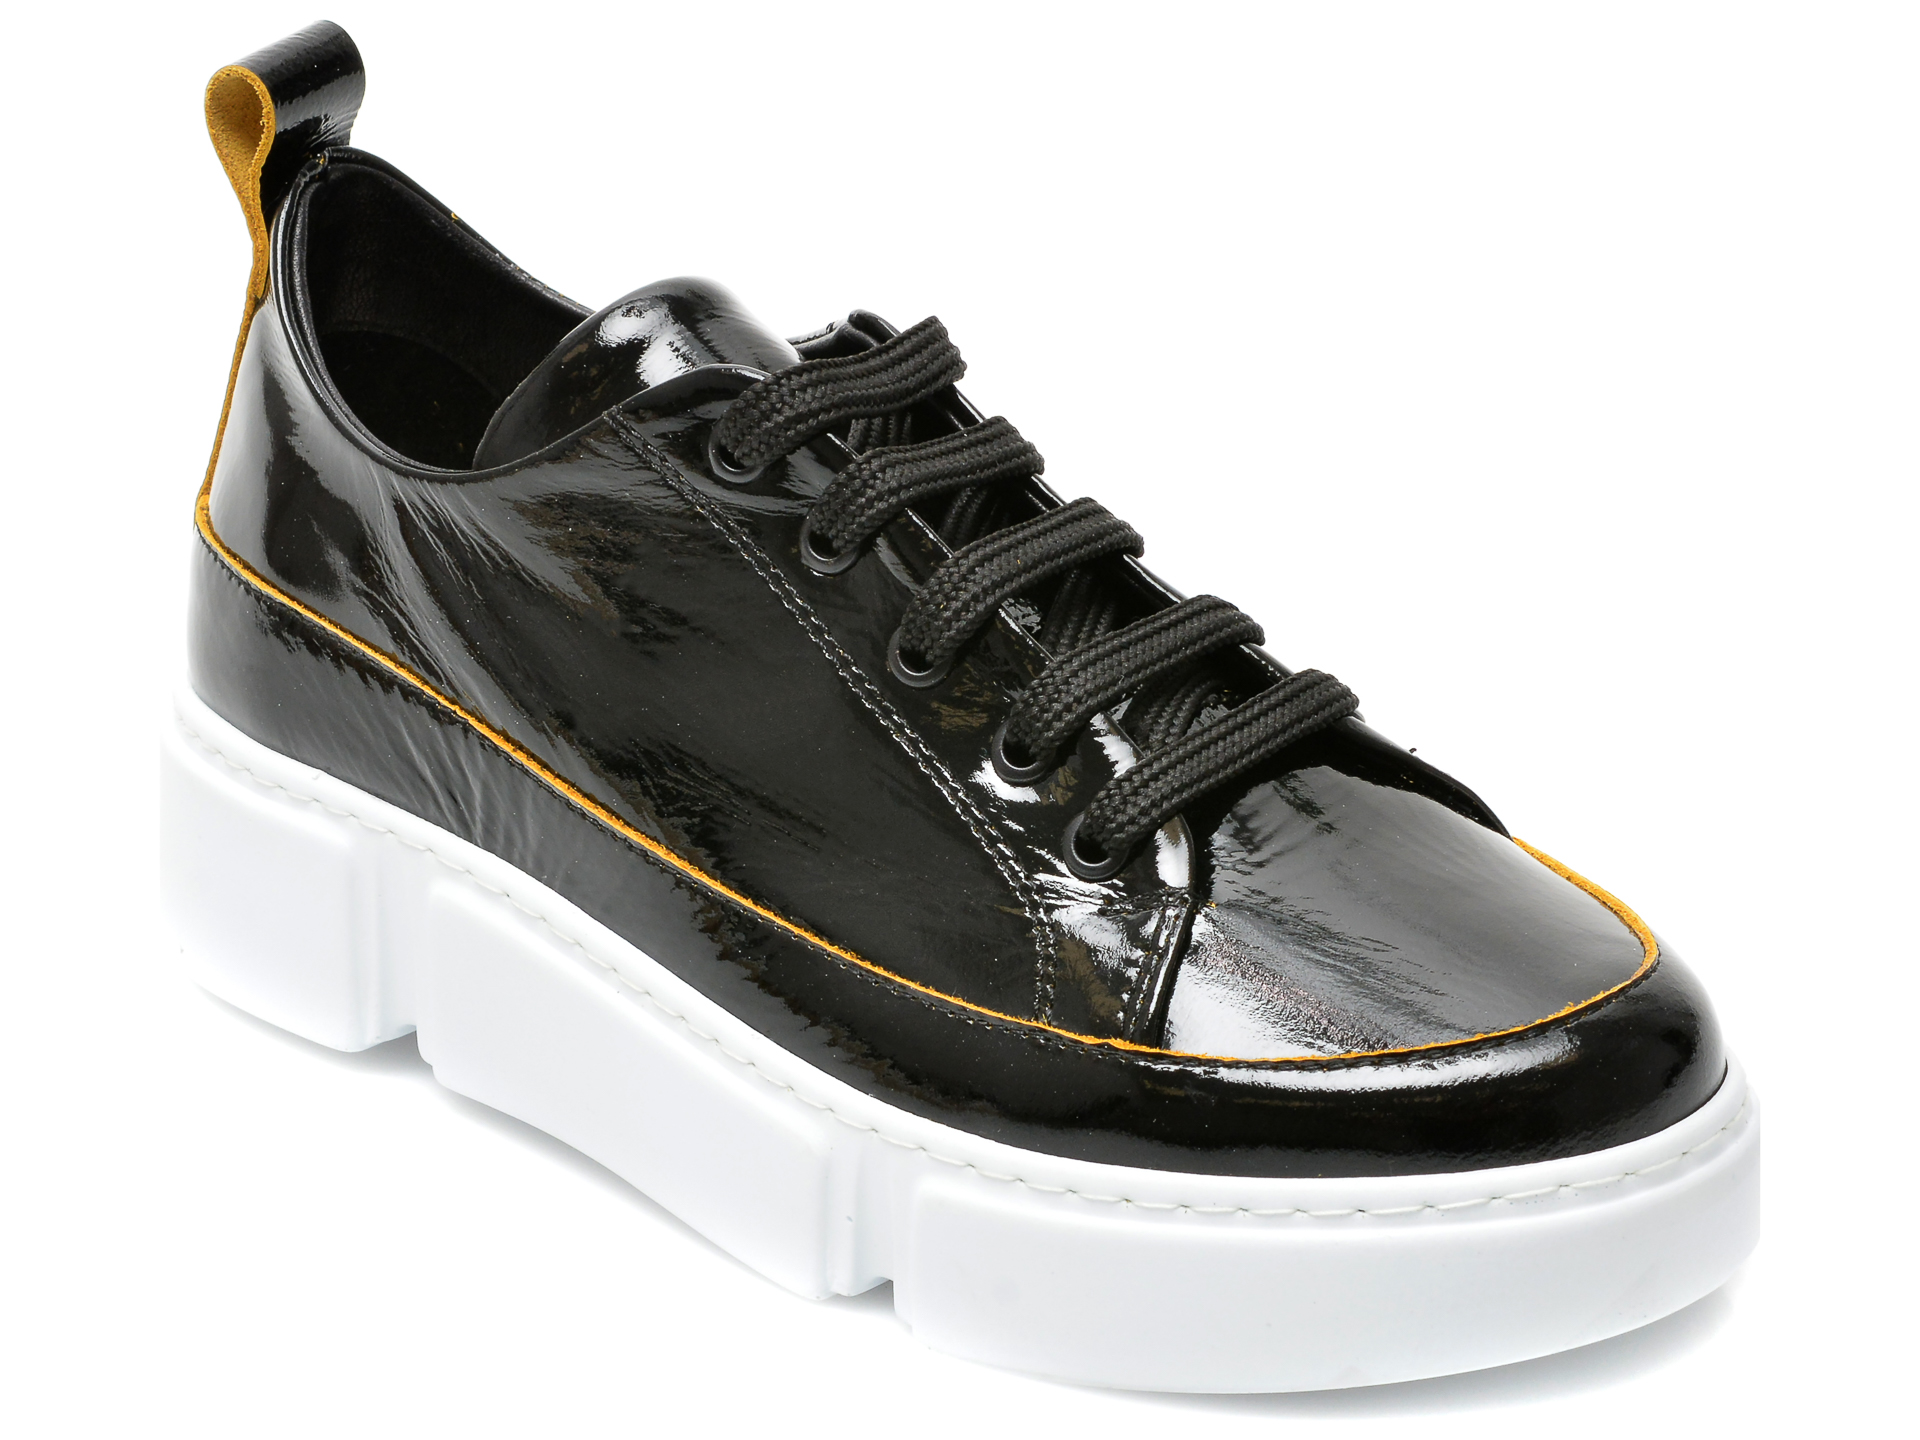 Pantofi sport BESTELLO negri, 2011, din piele naturala lacuita BESTELLO BESTELLO